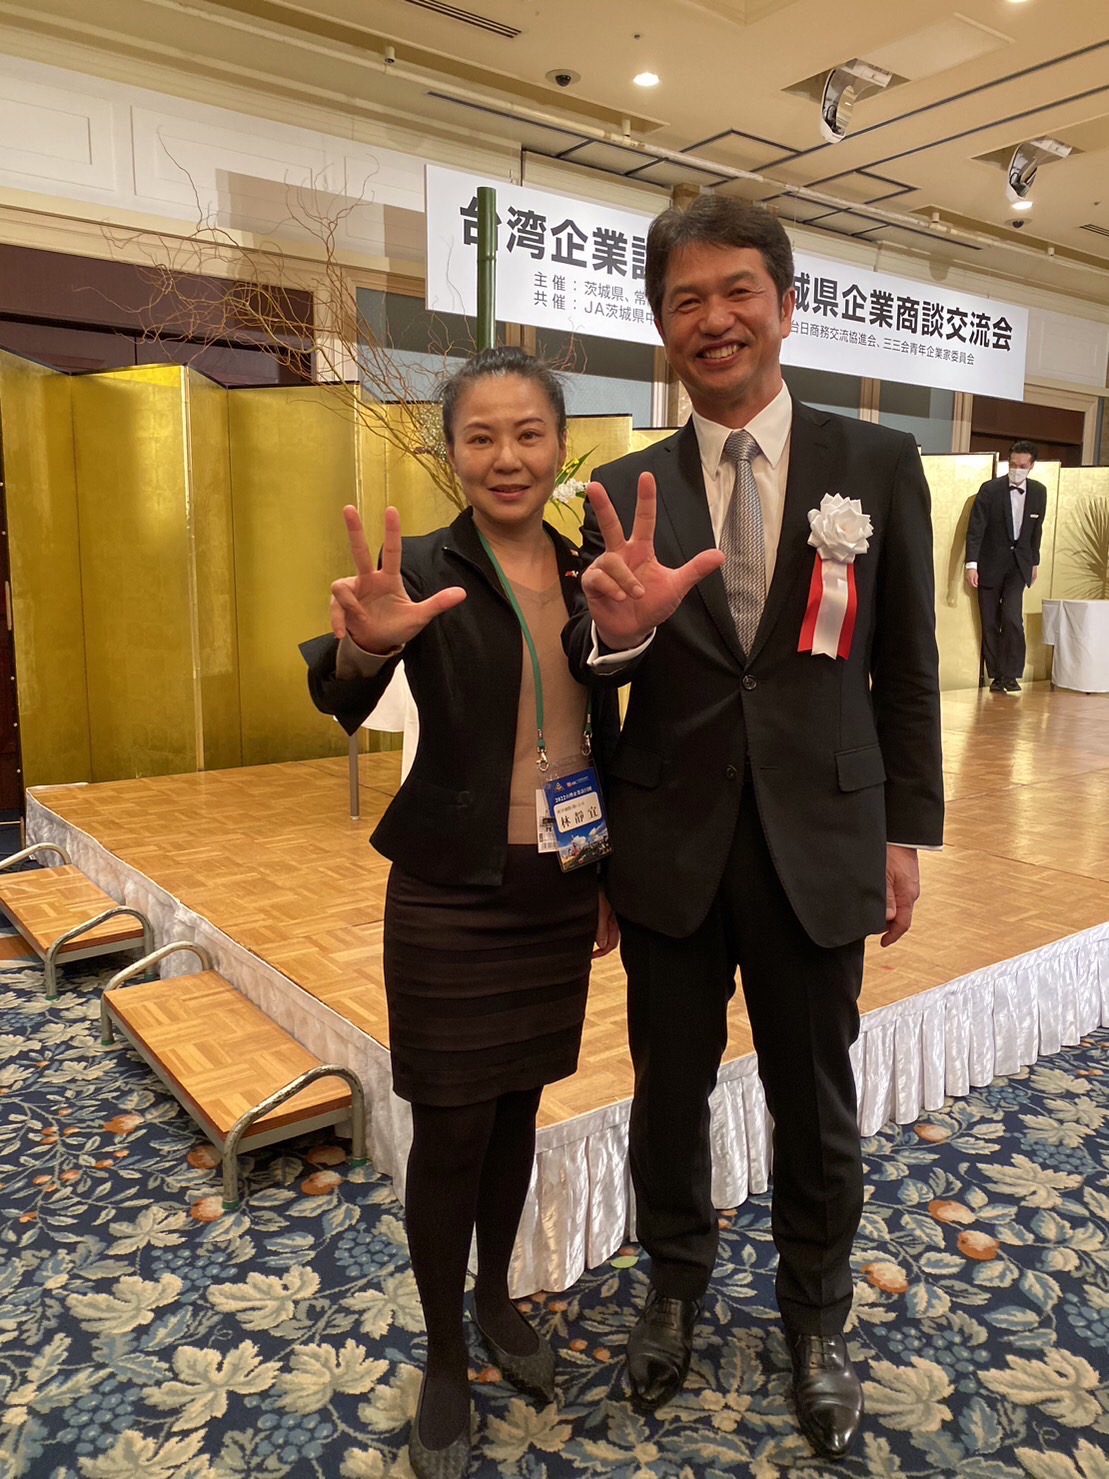 29日の交流会で茨城県の大井川和彦知事は「茨城県は国内では企業誘致でトップの地域。台湾からも注目してほしい」と話した。